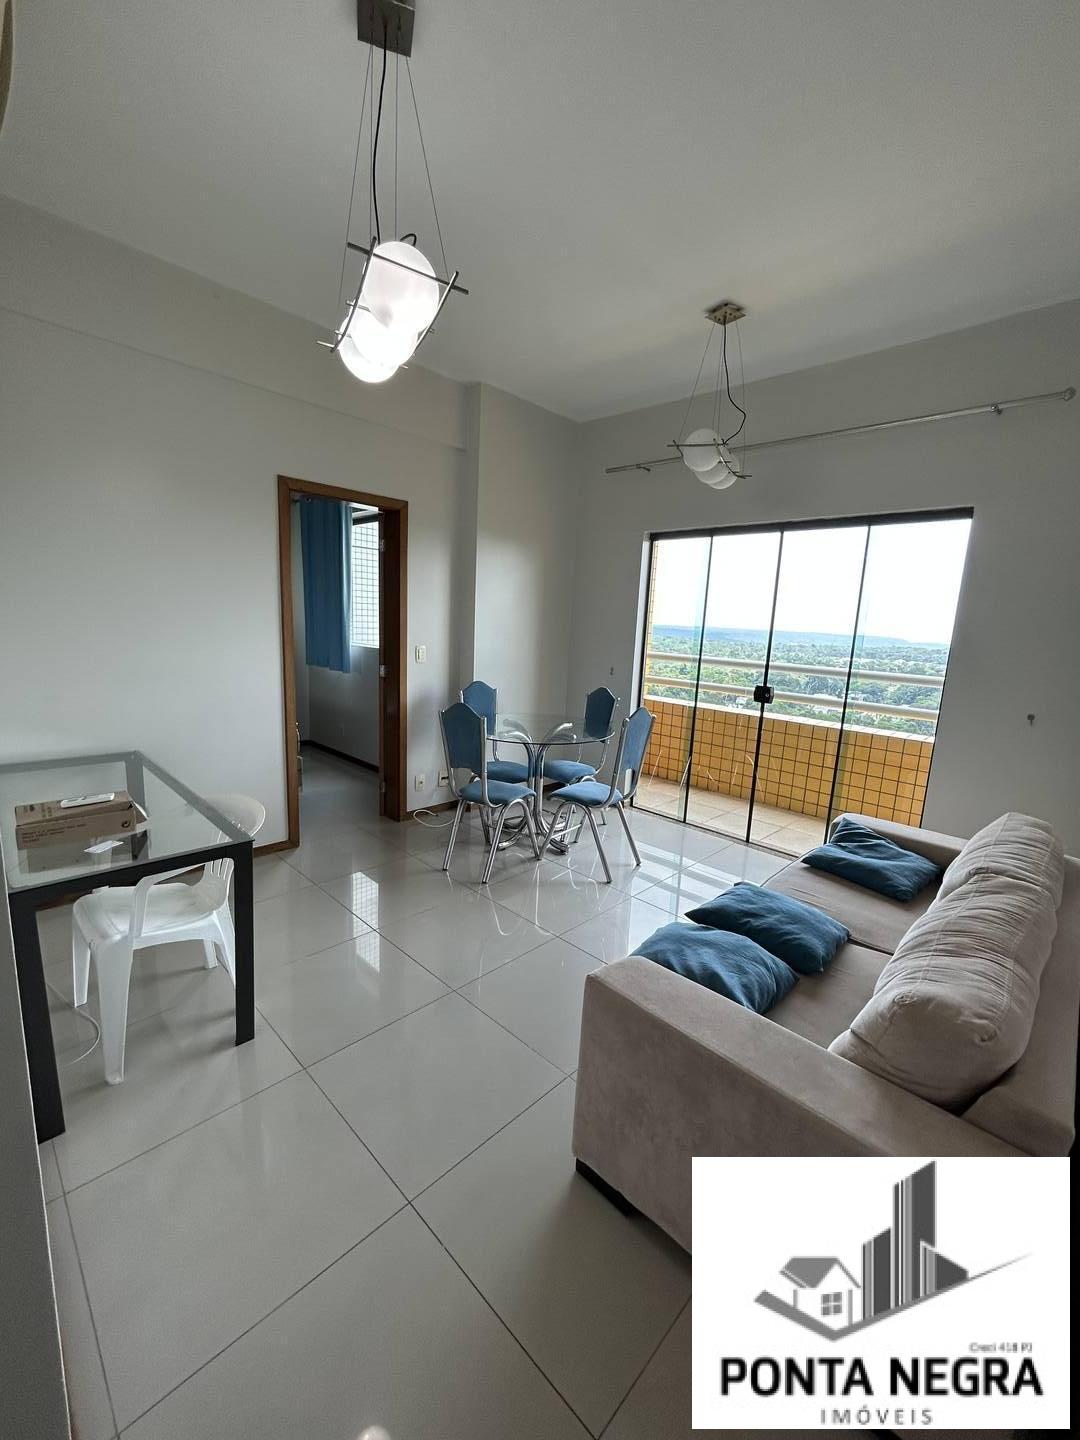 Apartamento, 1 quarto, 52 m² - Foto 2